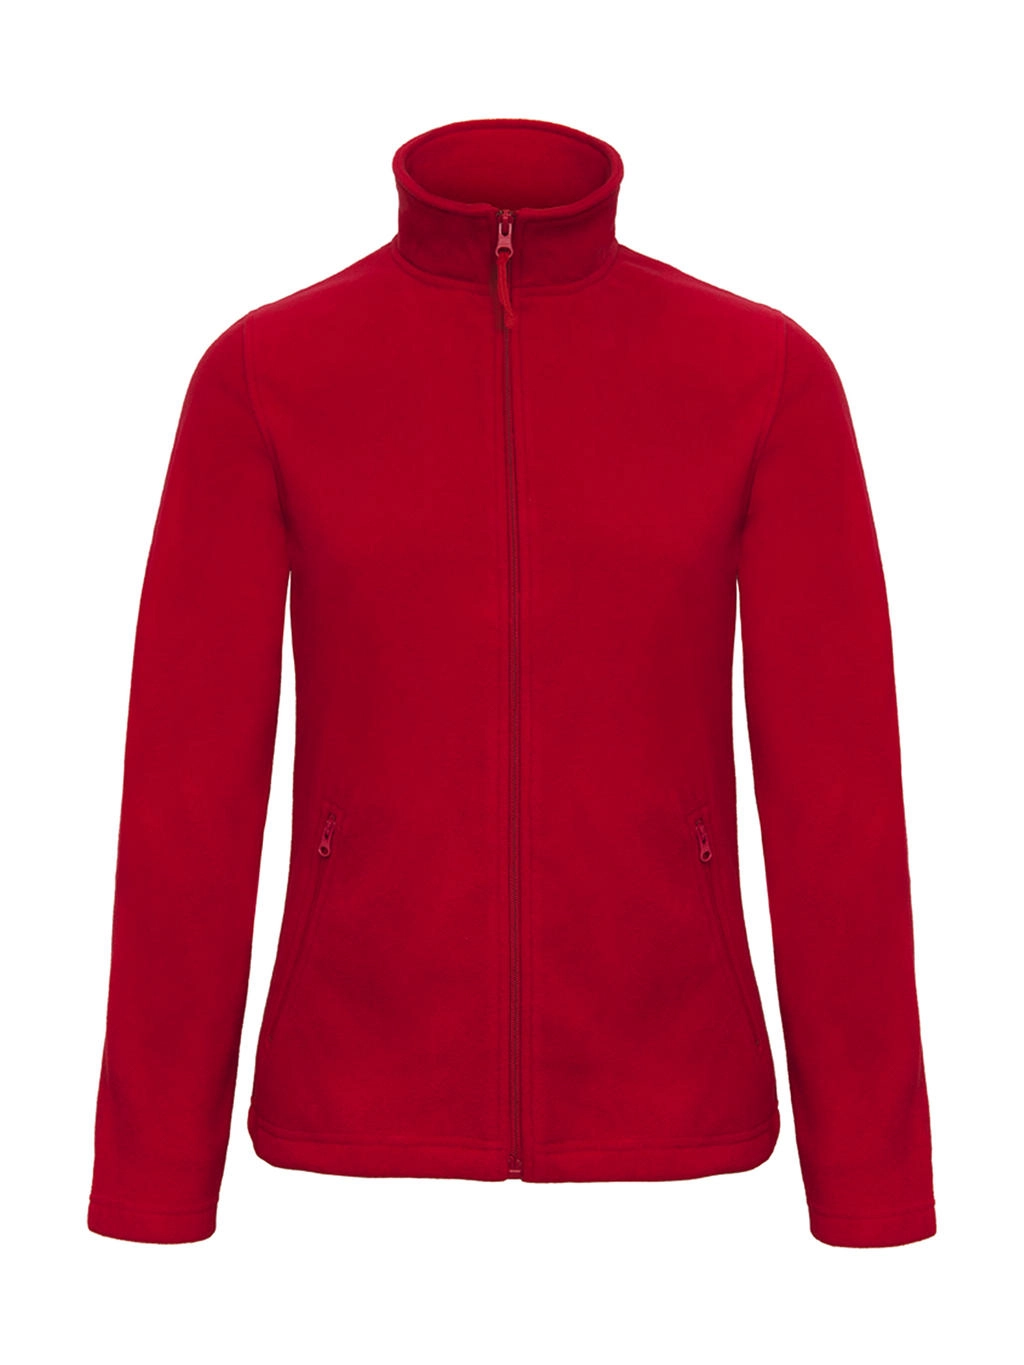 ID.501/women Micro Fleece Full Zip zum Besticken und Bedrucken in der Farbe Red mit Ihren Logo, Schriftzug oder Motiv.